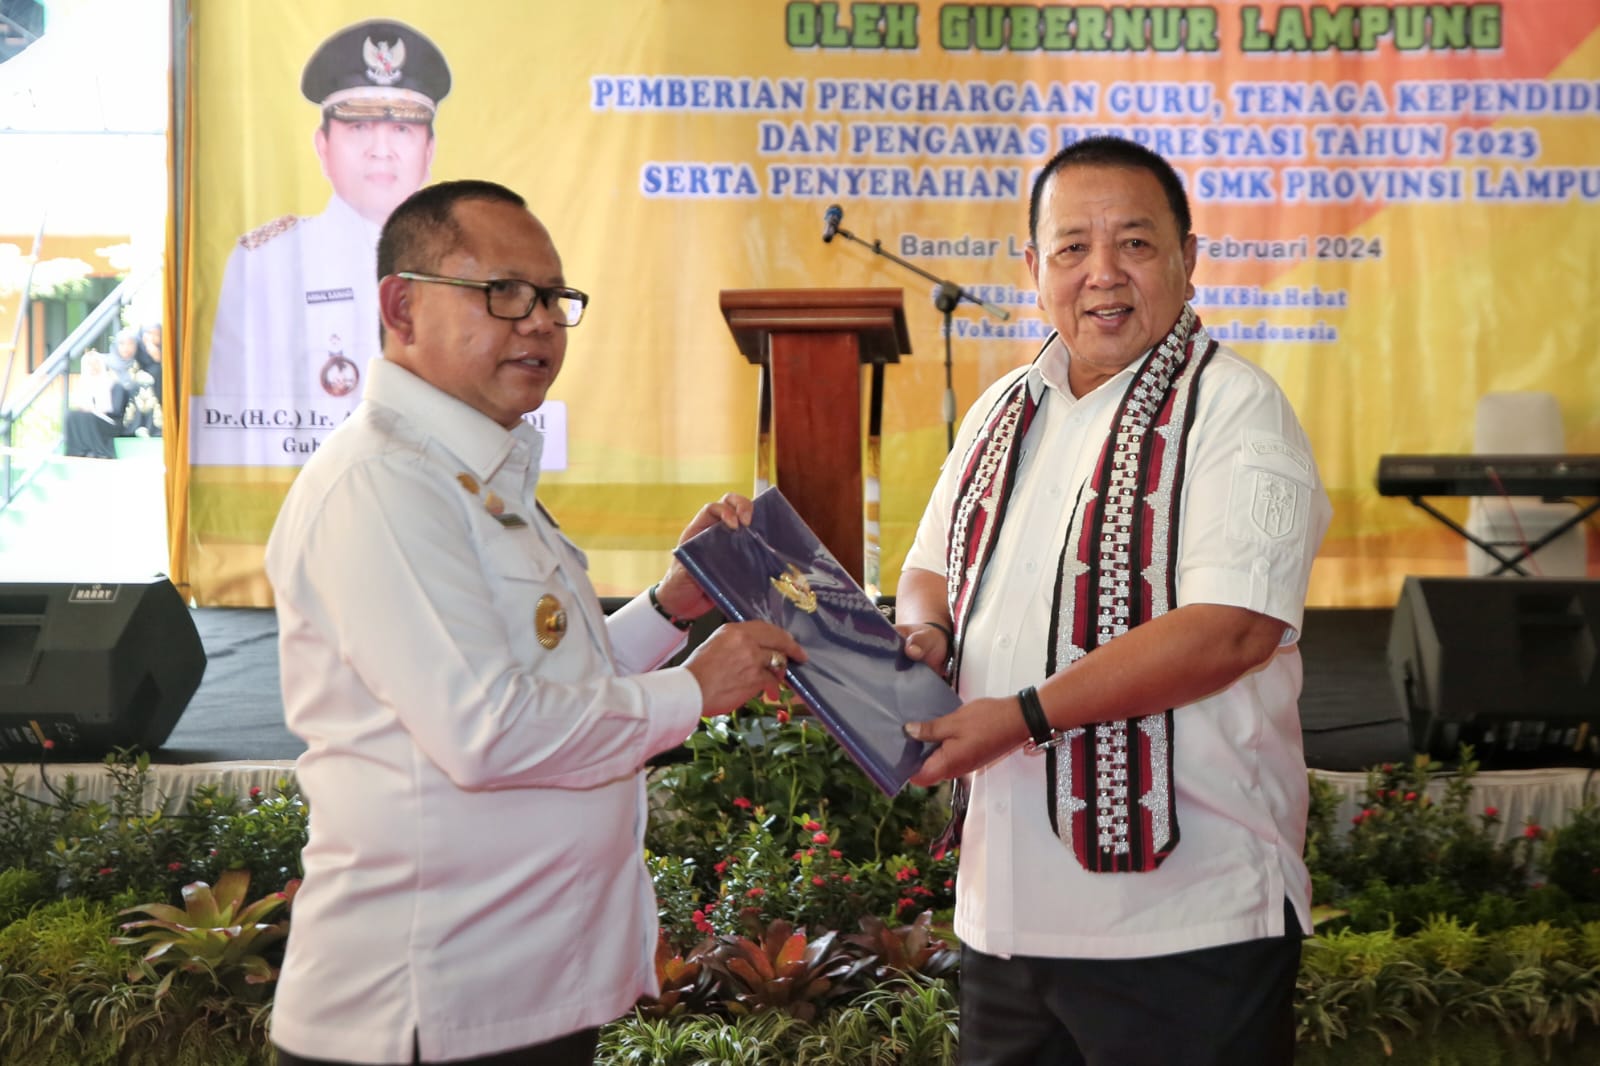 Gubernur Arinal Resmikan Masjid Ar-Rahman dan Ruang Praktik Siswa SMK Negeri 4 Bandar Lampung, Dorong Imtaq dan Iptek Berjalan Seiring